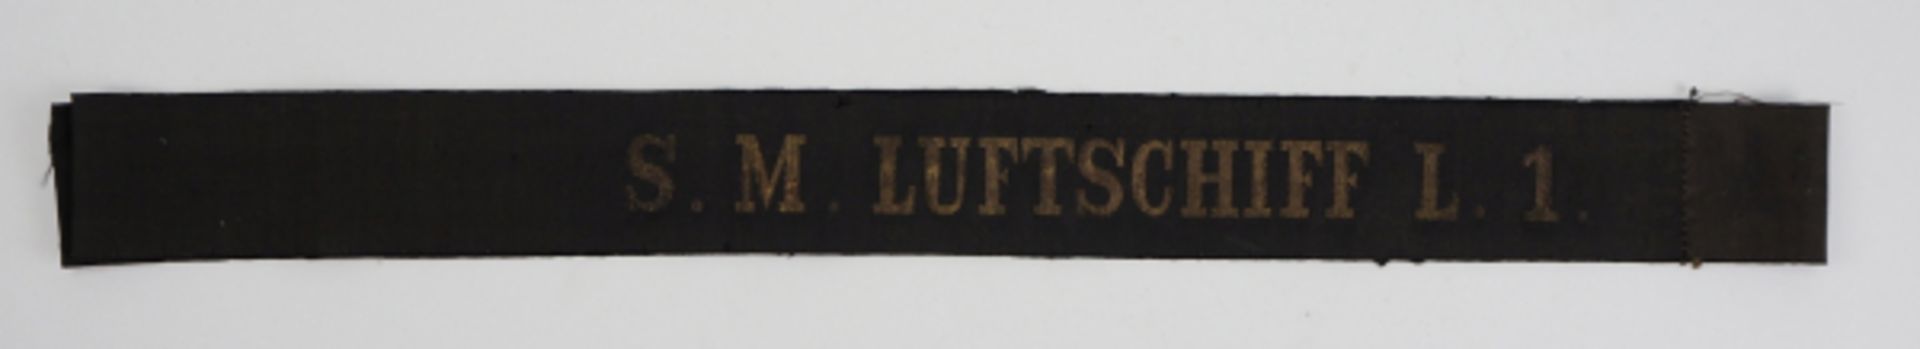 Mützenband: S.M. LUFTSCHIFF L.1.Schwarzes Band mit eingewebten goldenen Lettern.Zustand: II